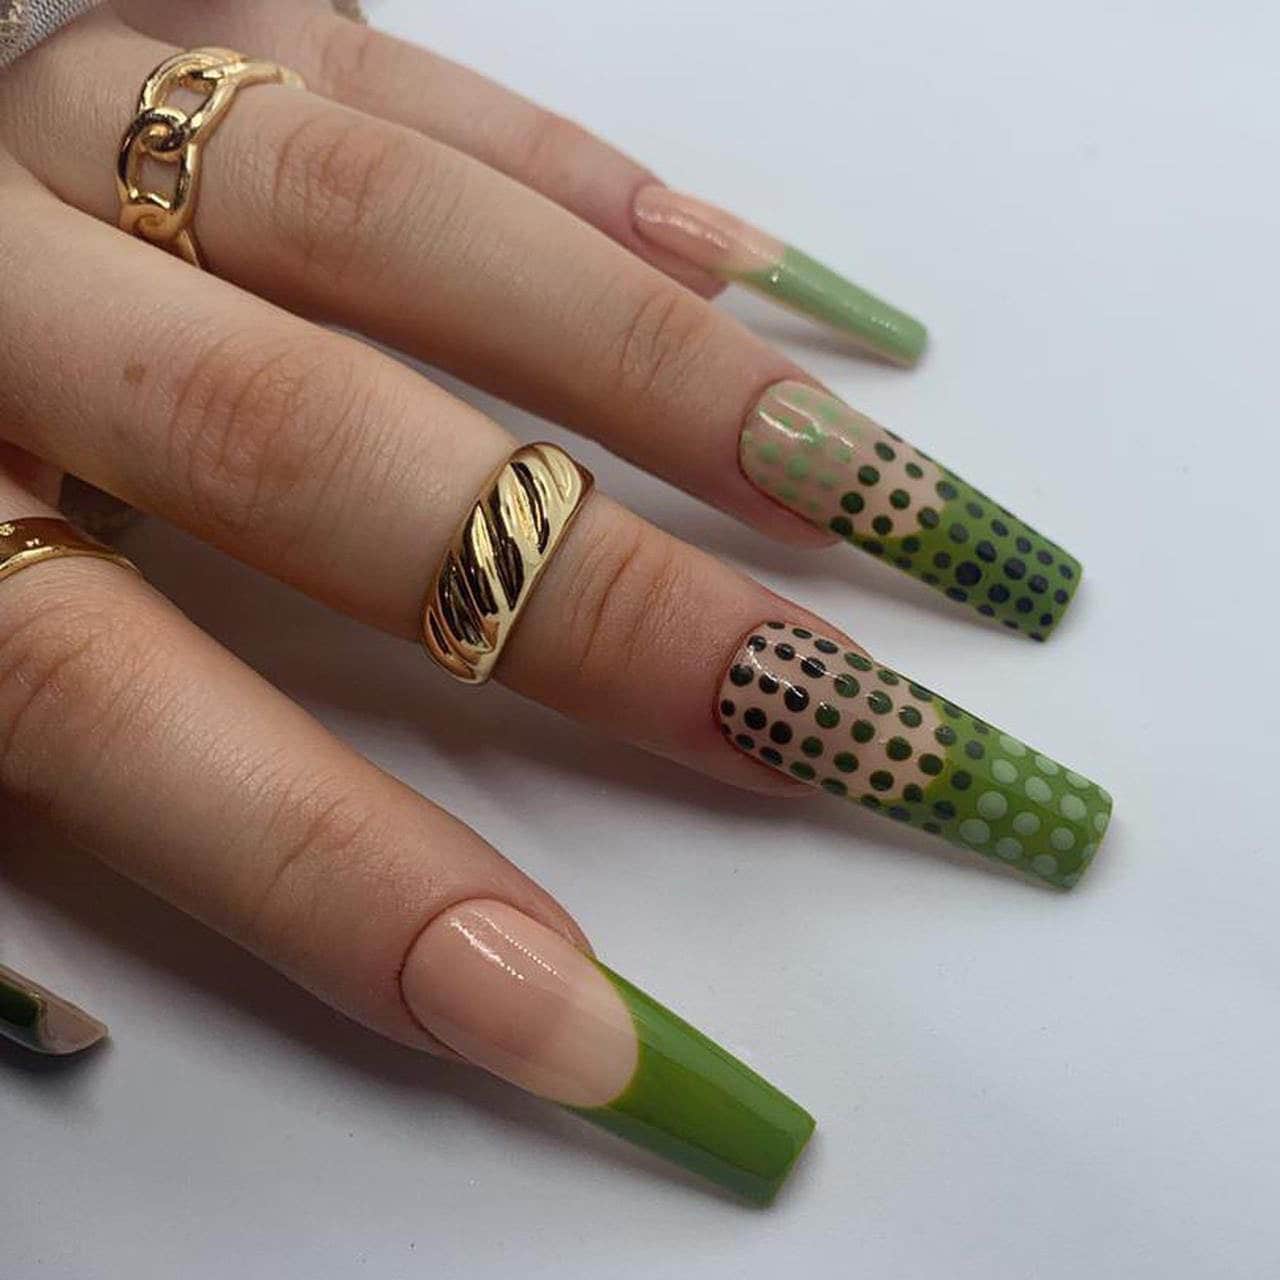 Grünes Polka-Dot French Tip Press On Nails | Handgemalte Wiederverwendbare Gelnägel von Etsy - nailsbymonicazx